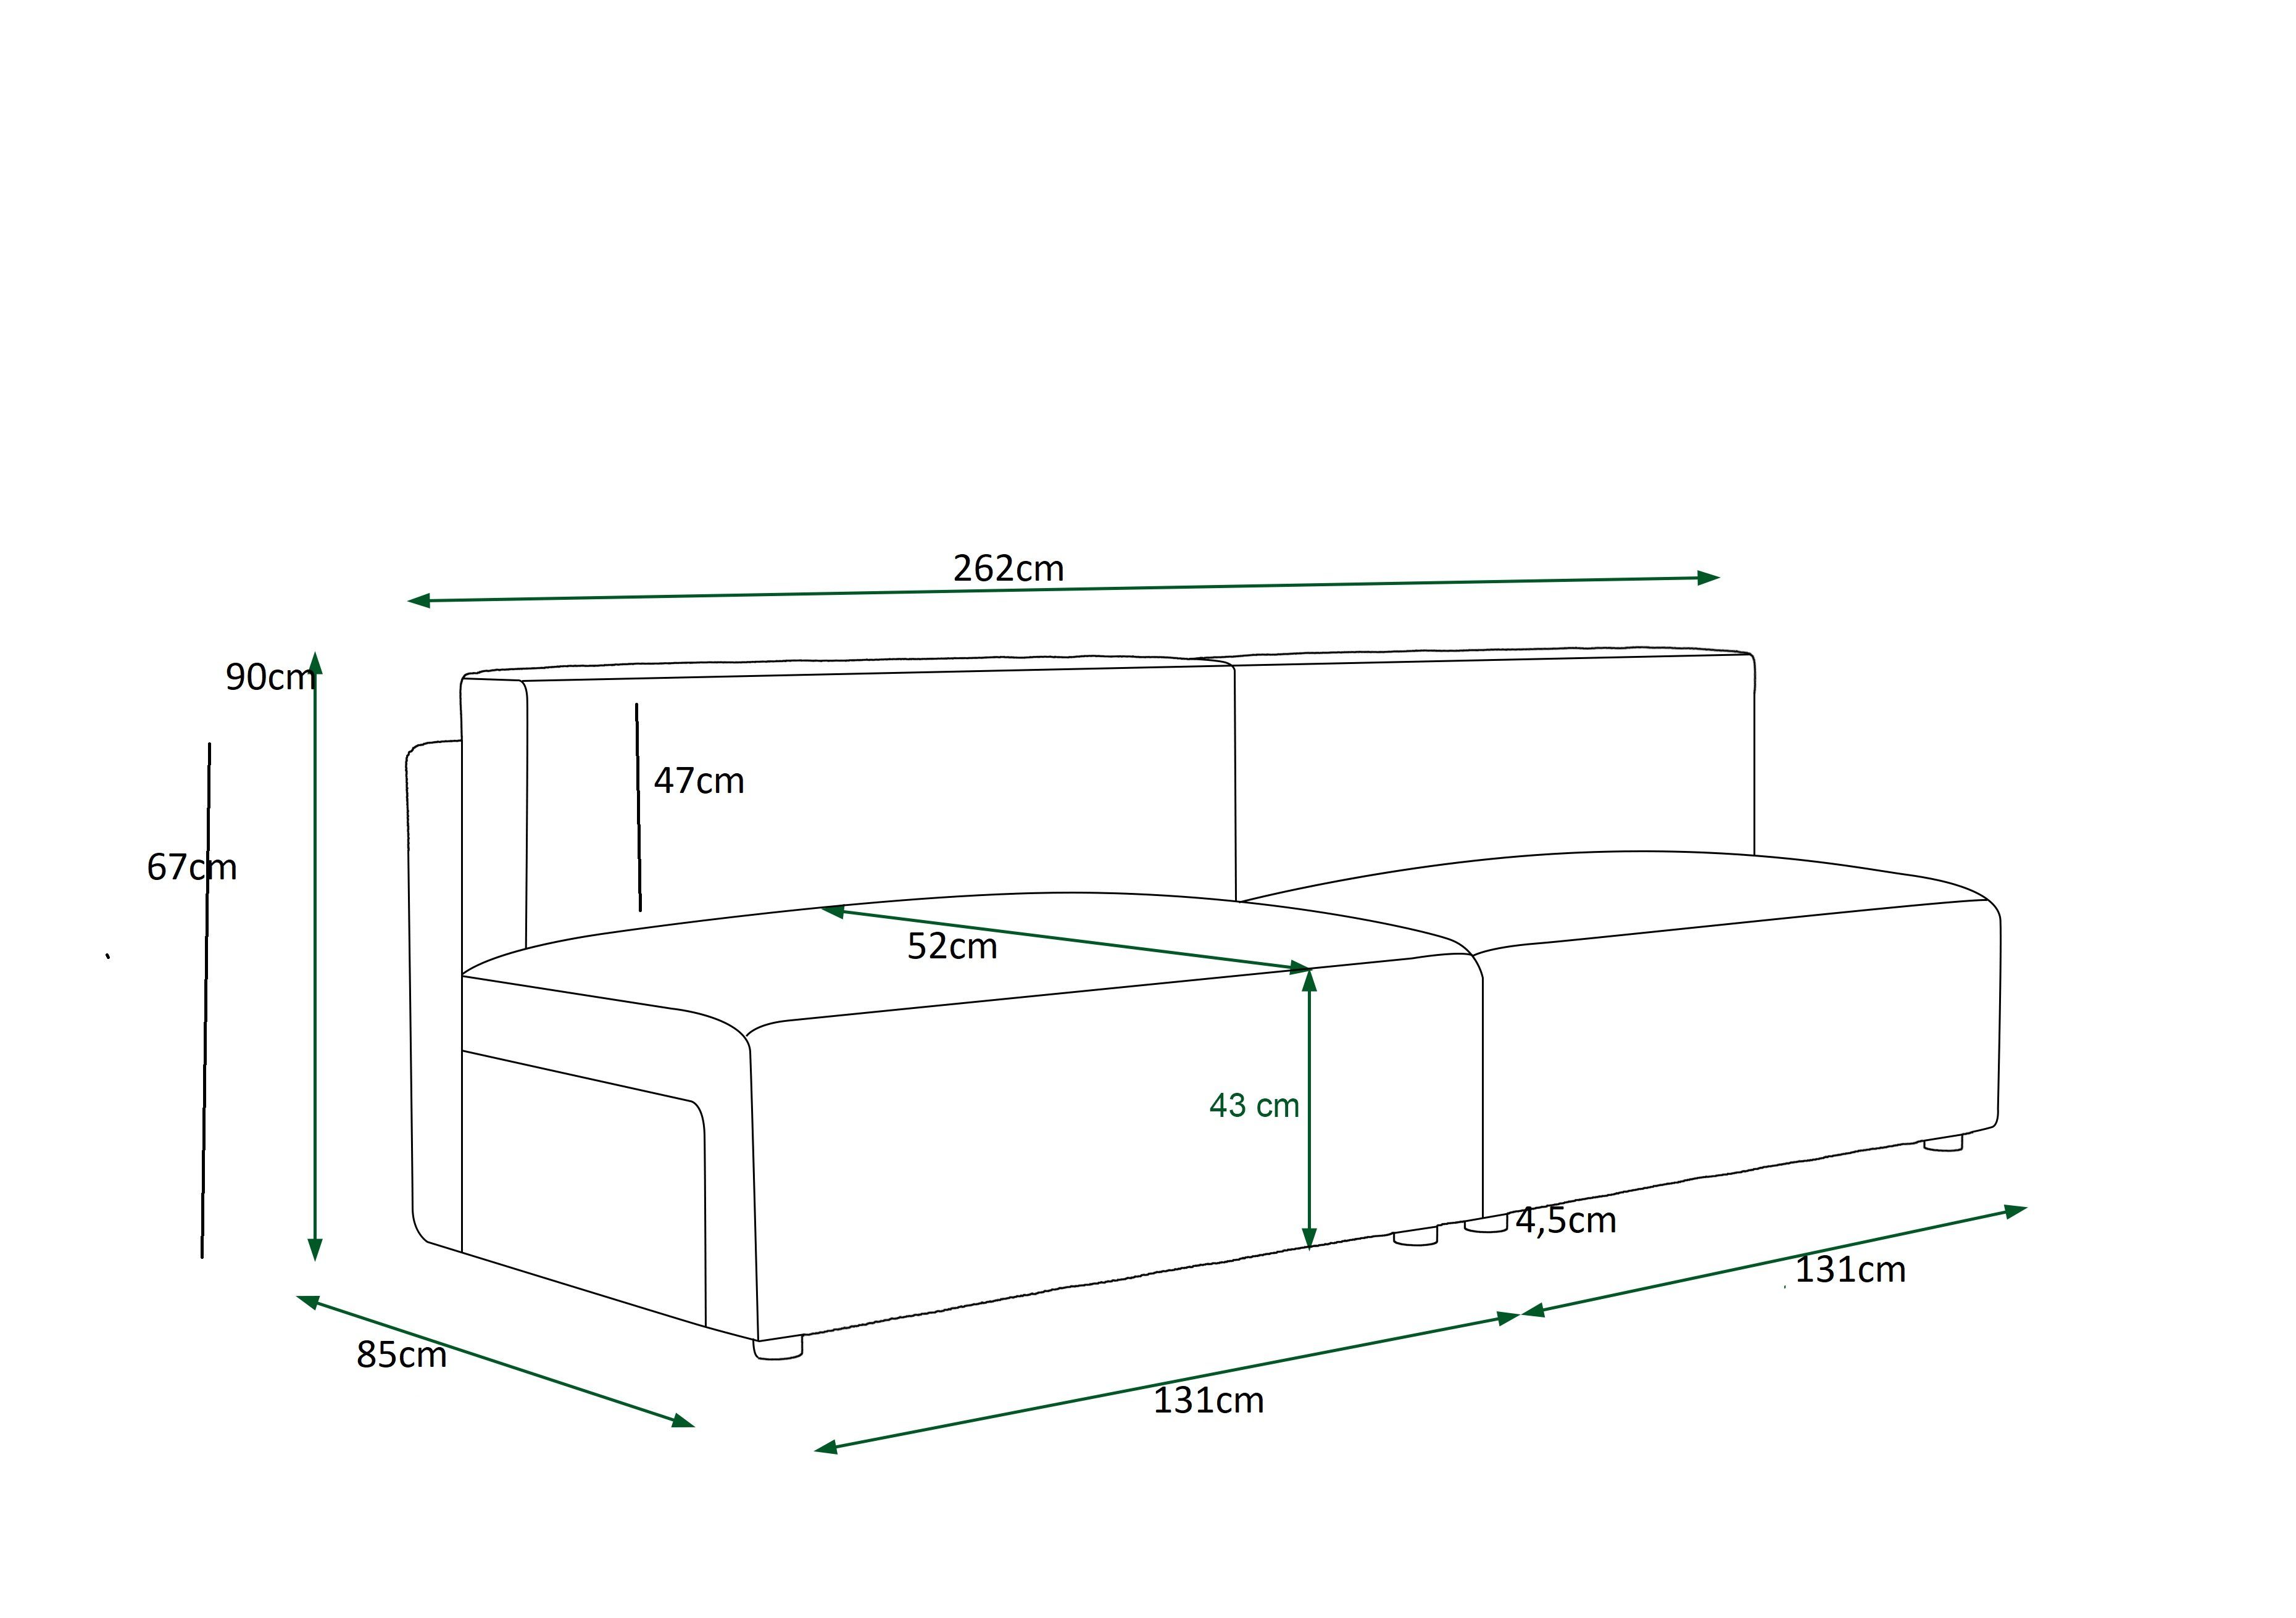 Schlafsofa, und COUCH MIRAX2 Grau Schlaffunktion Bettkasten pressiode Sofa mit 262cm